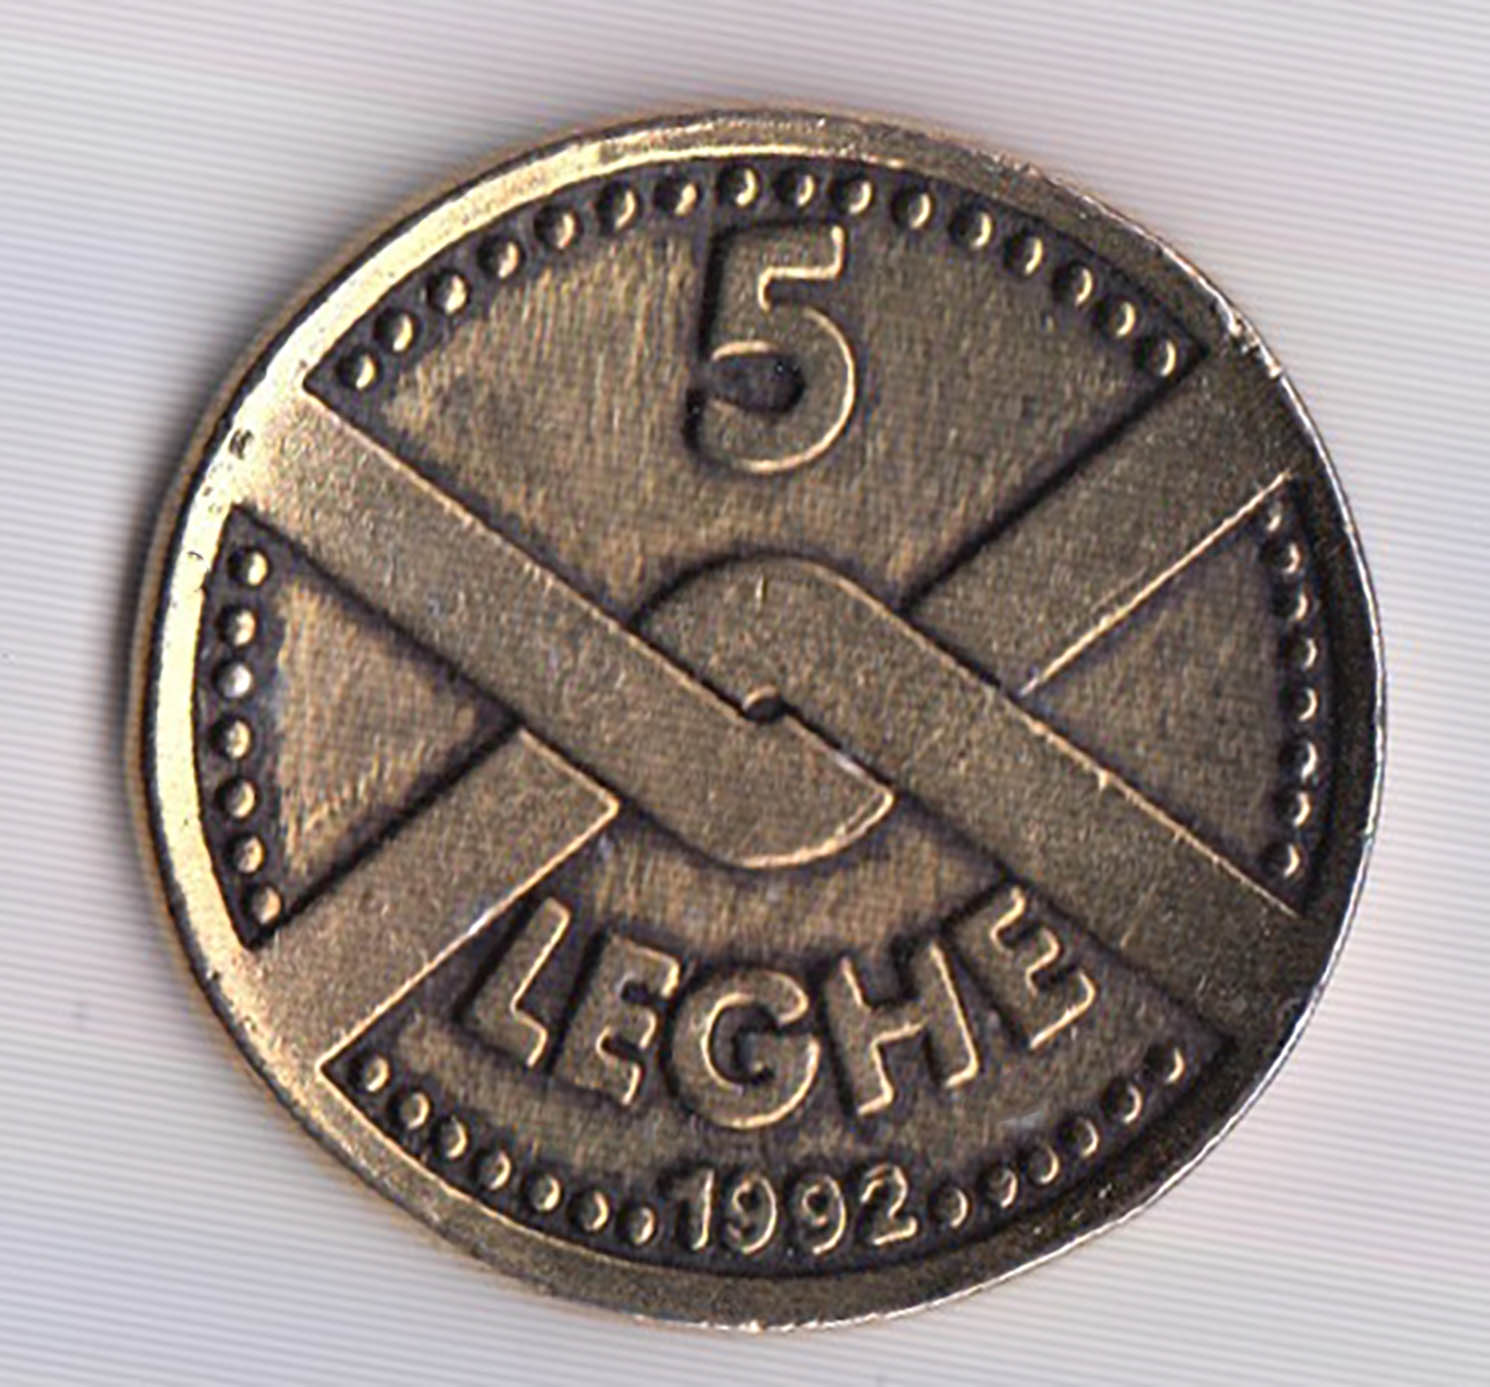 Moneta medaglia da 5 Leghe 1992 con raffigurato Alberto da Giussano